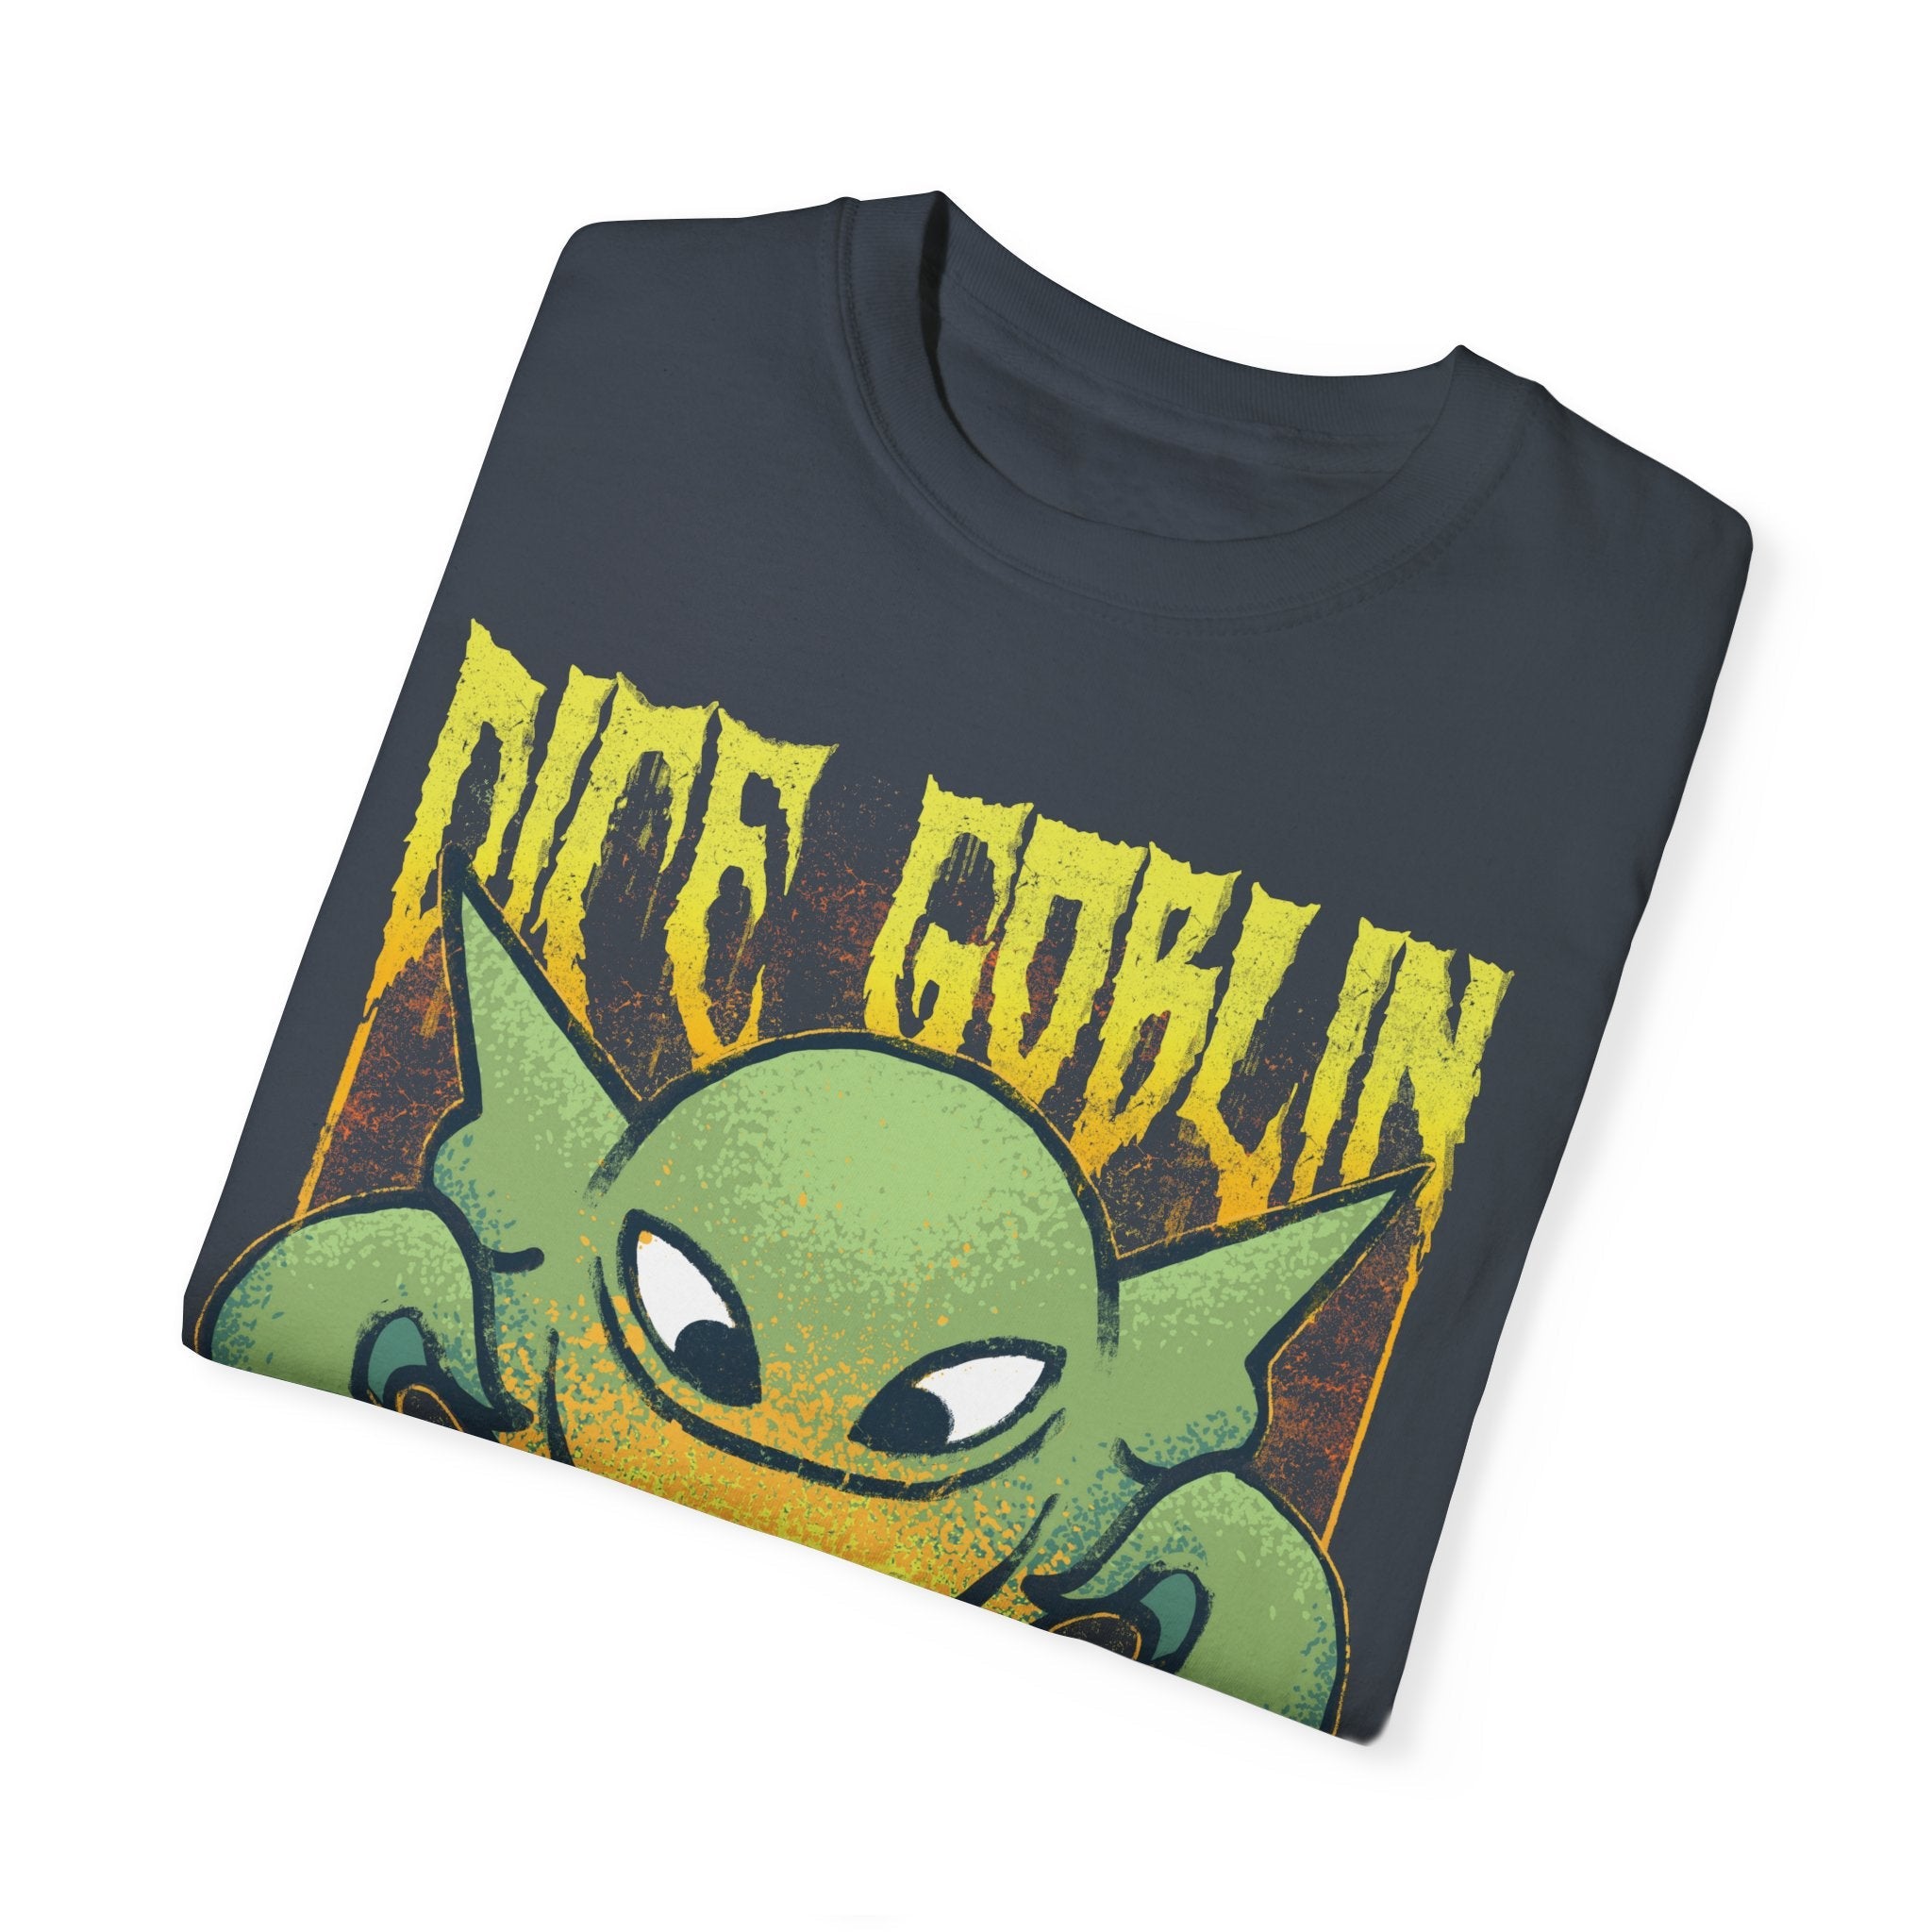 Dice Goblin | Metal | Comfort Colors Premium T-Shirt - T-Shirt - Ace of Gnomes - 26801627507762460451